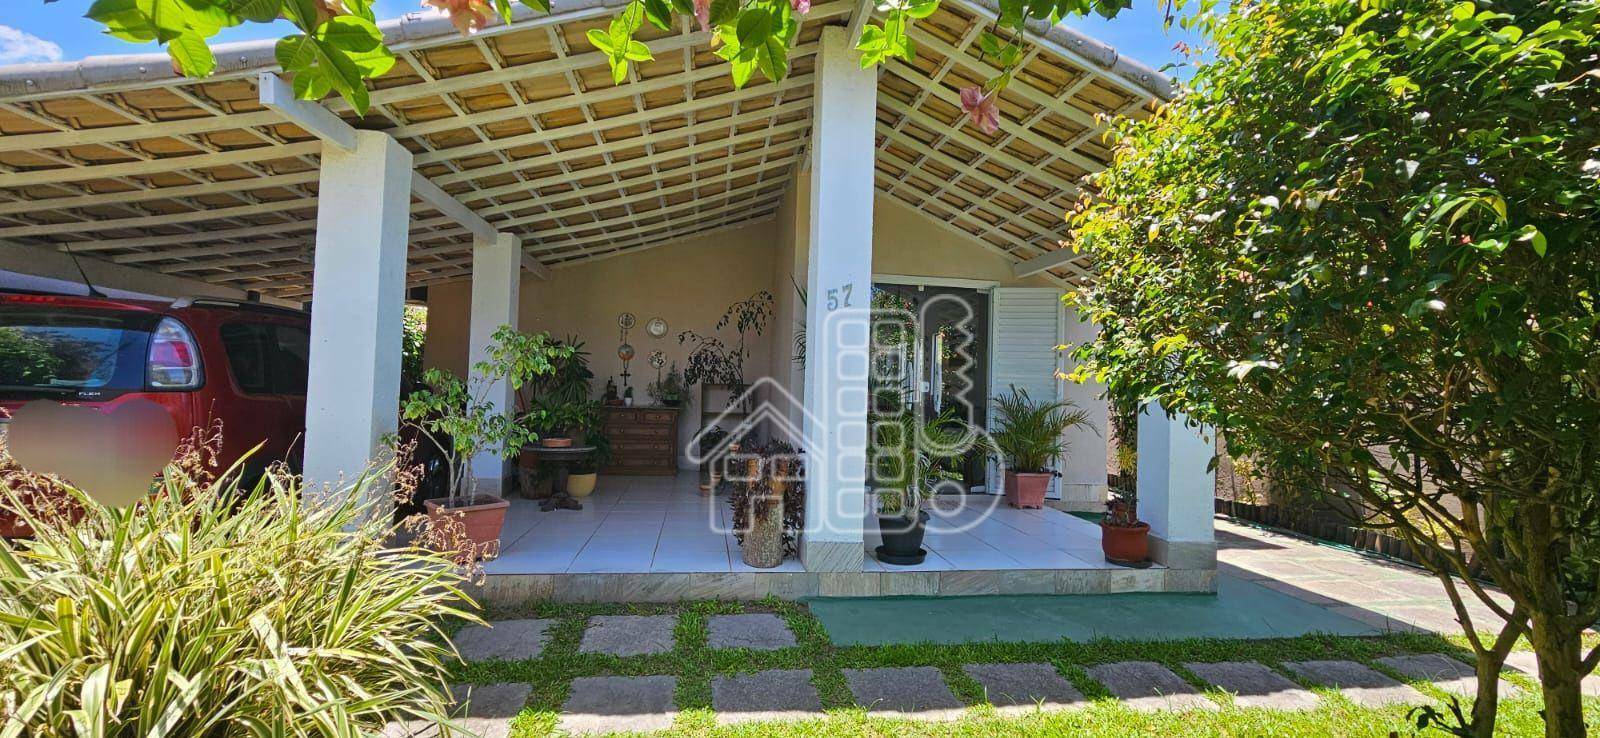 Casa com 4 quartos à venda, 126 m² por R$ 590.000 - Cajueiros (Itaipuaçu) - Maricá/RJ